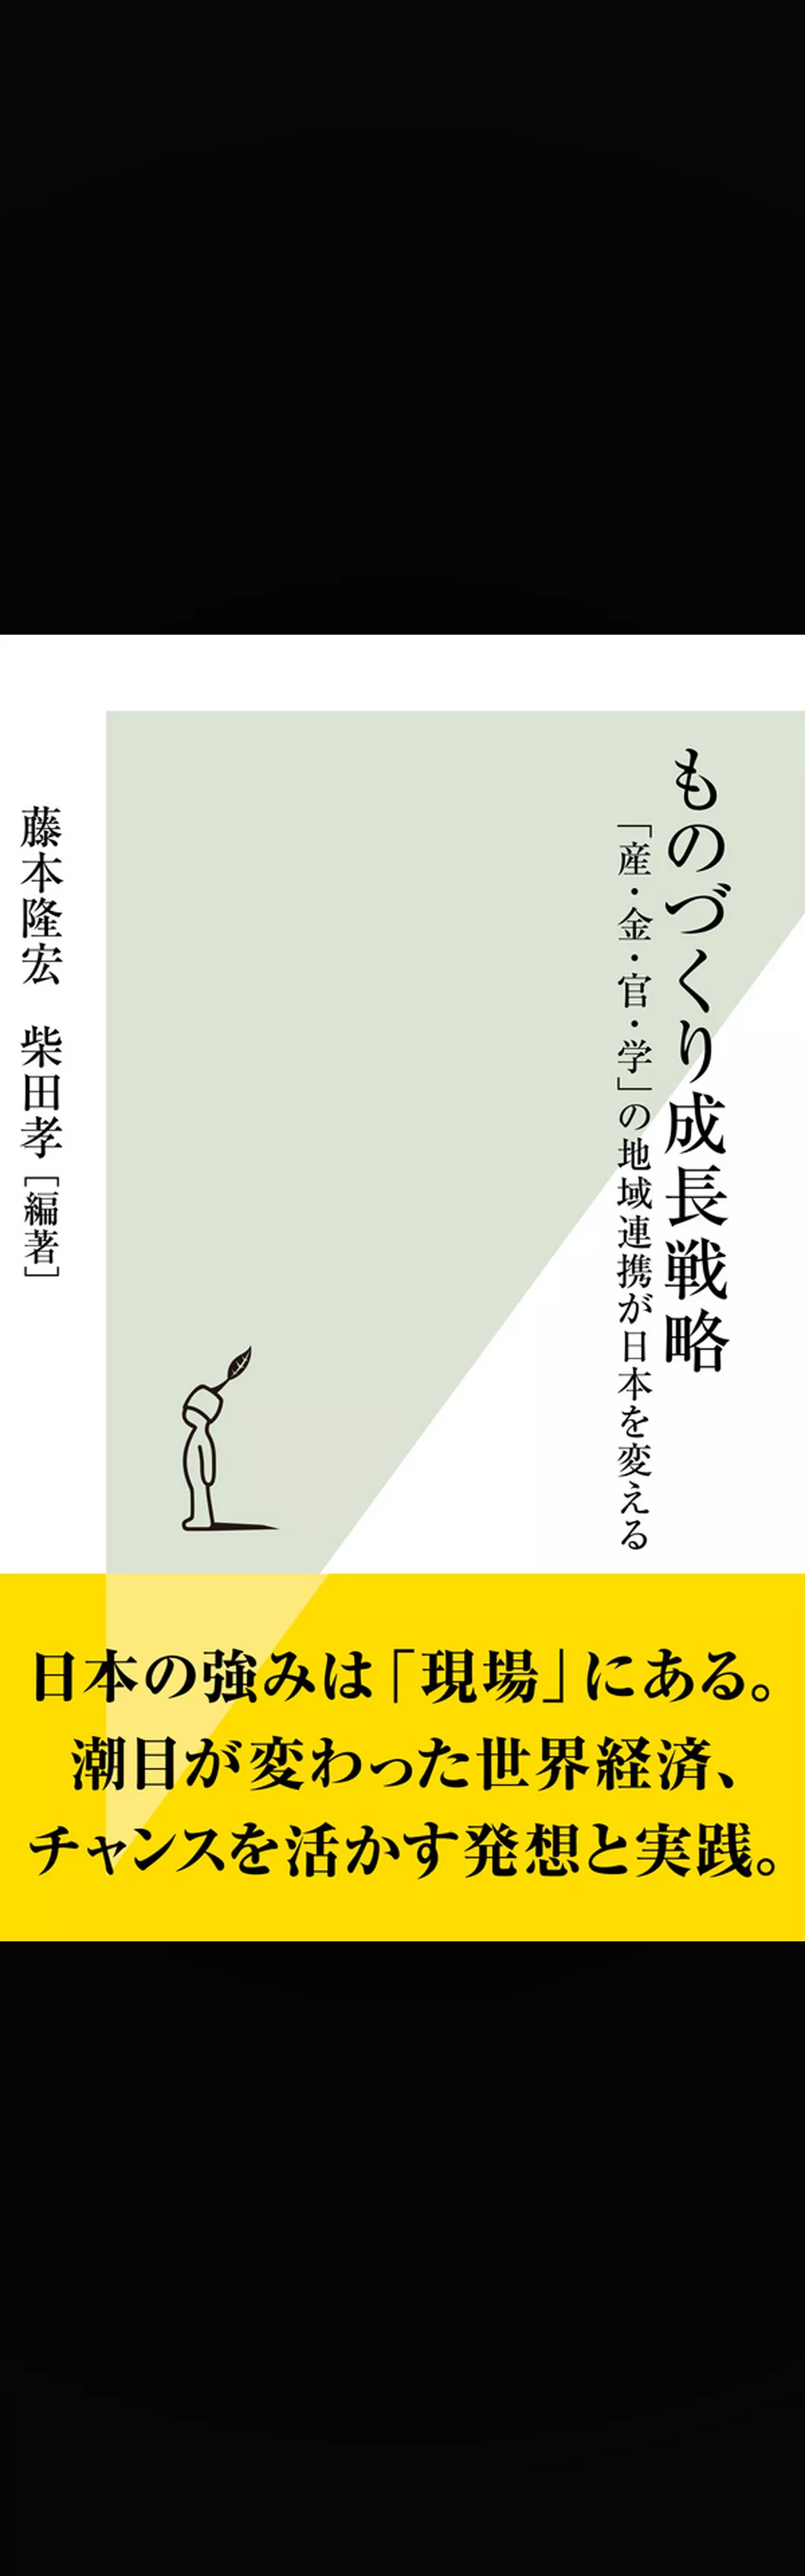 ものづくり成長戦略～「産・金・官・学」の地域連携が日本を変える～